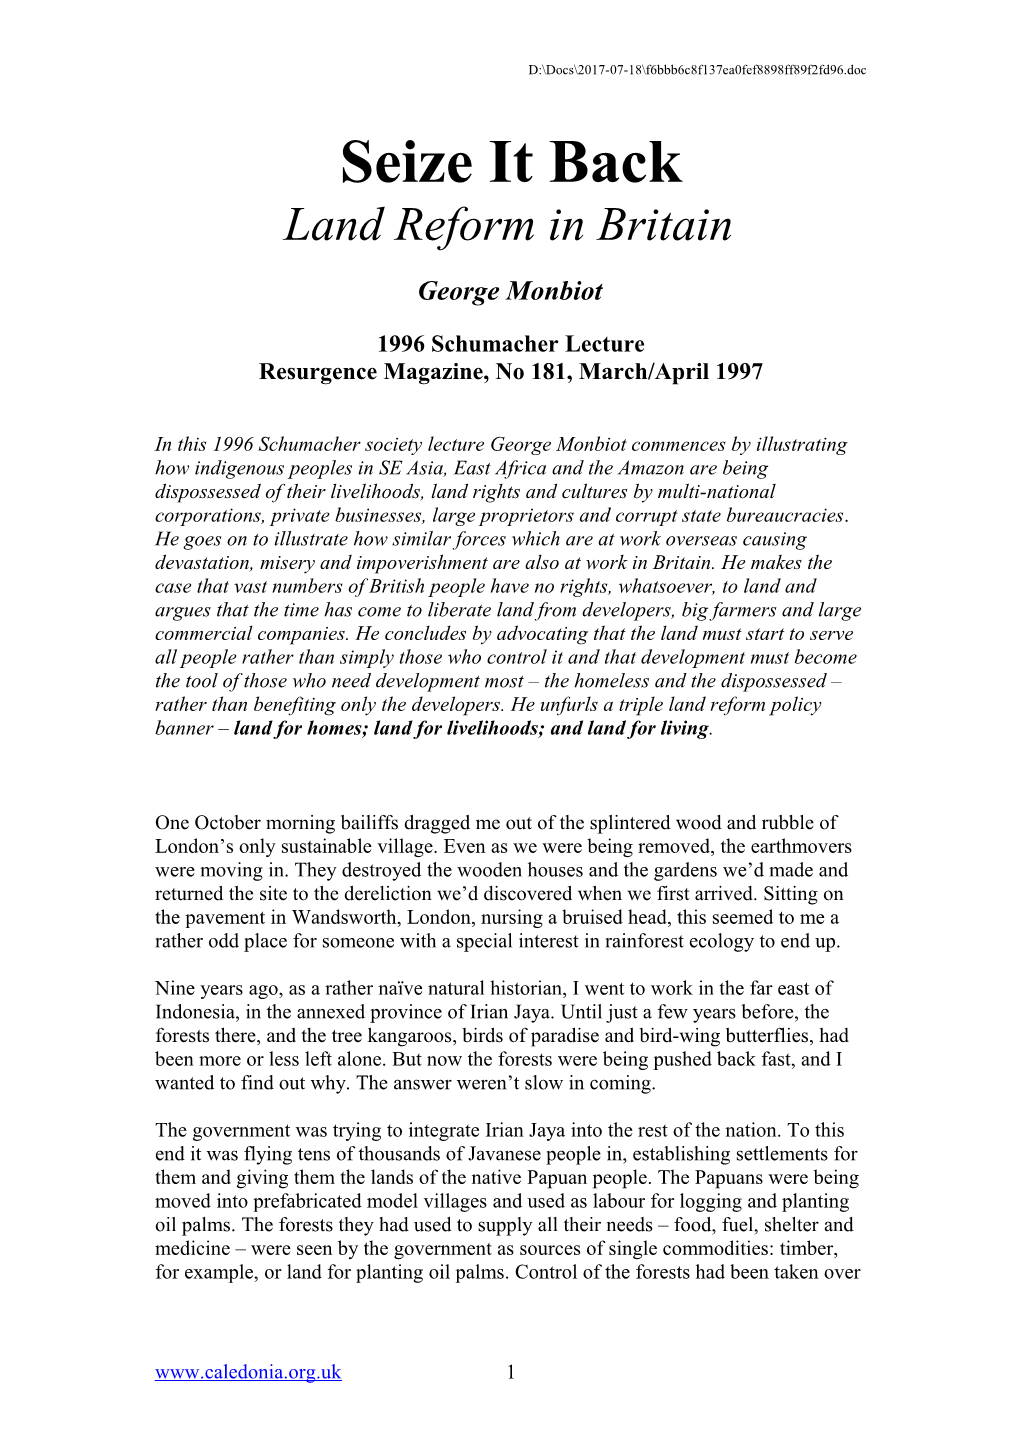 Land Reform in Britain